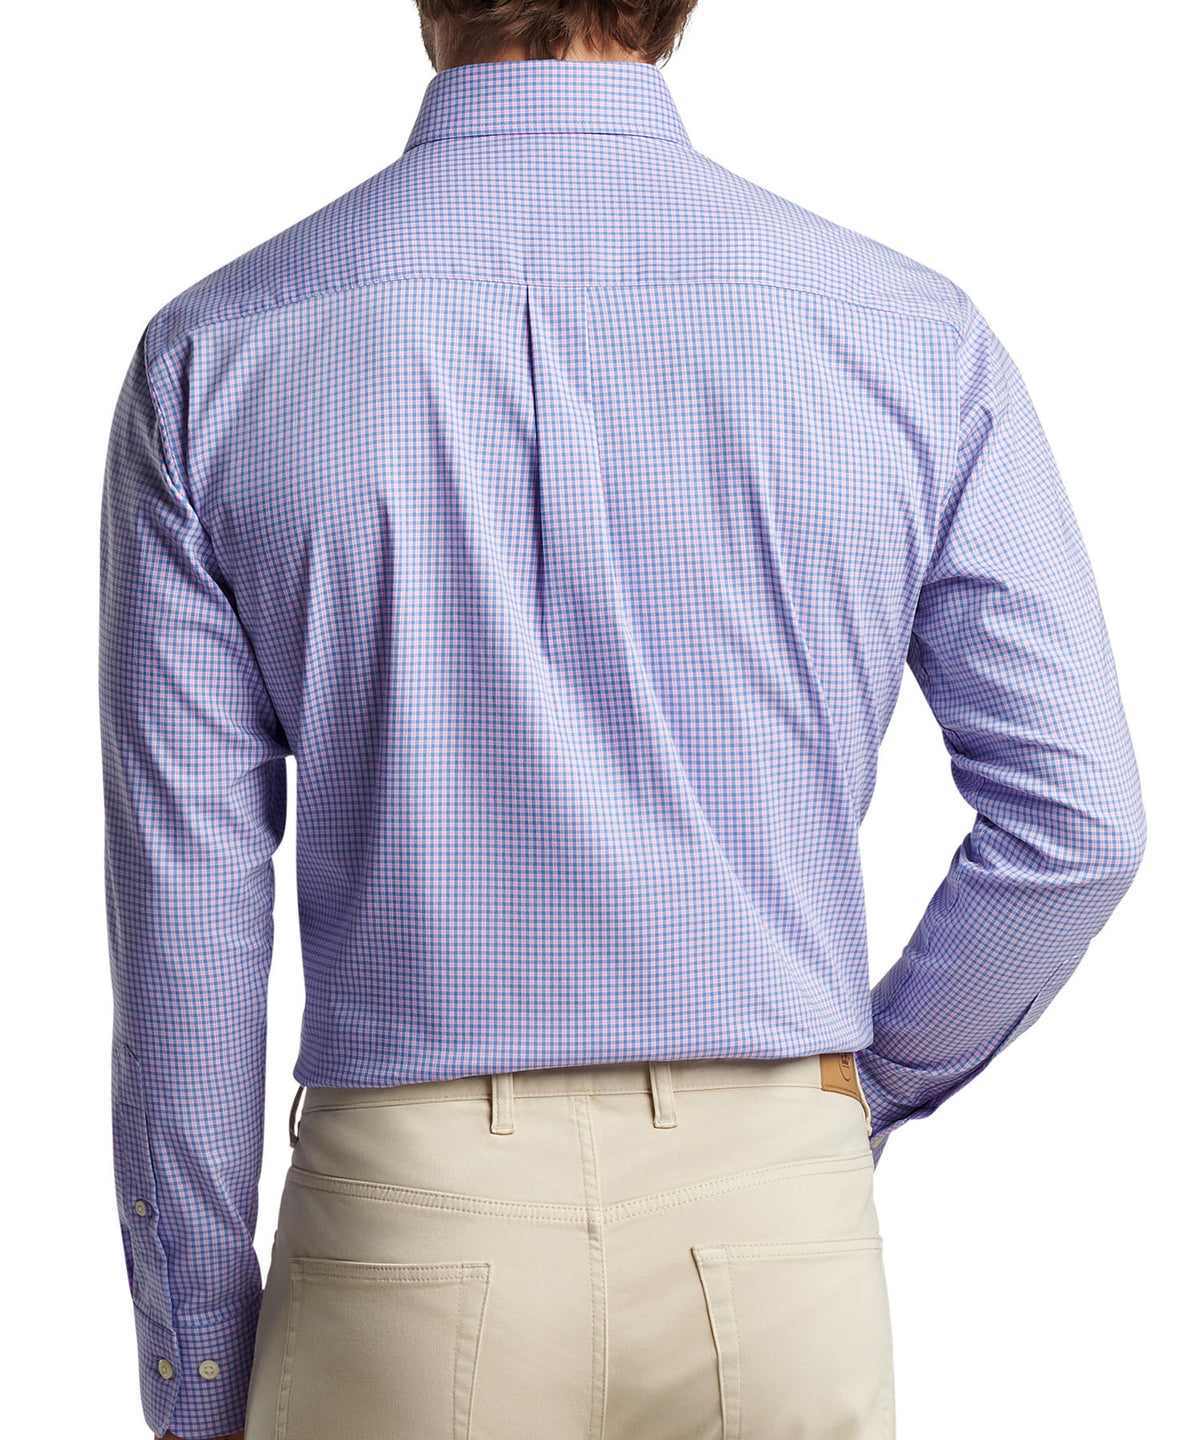 Peter Millar Long Sleeve Winthrop Button-Down Sport Shirt, Big & Tall